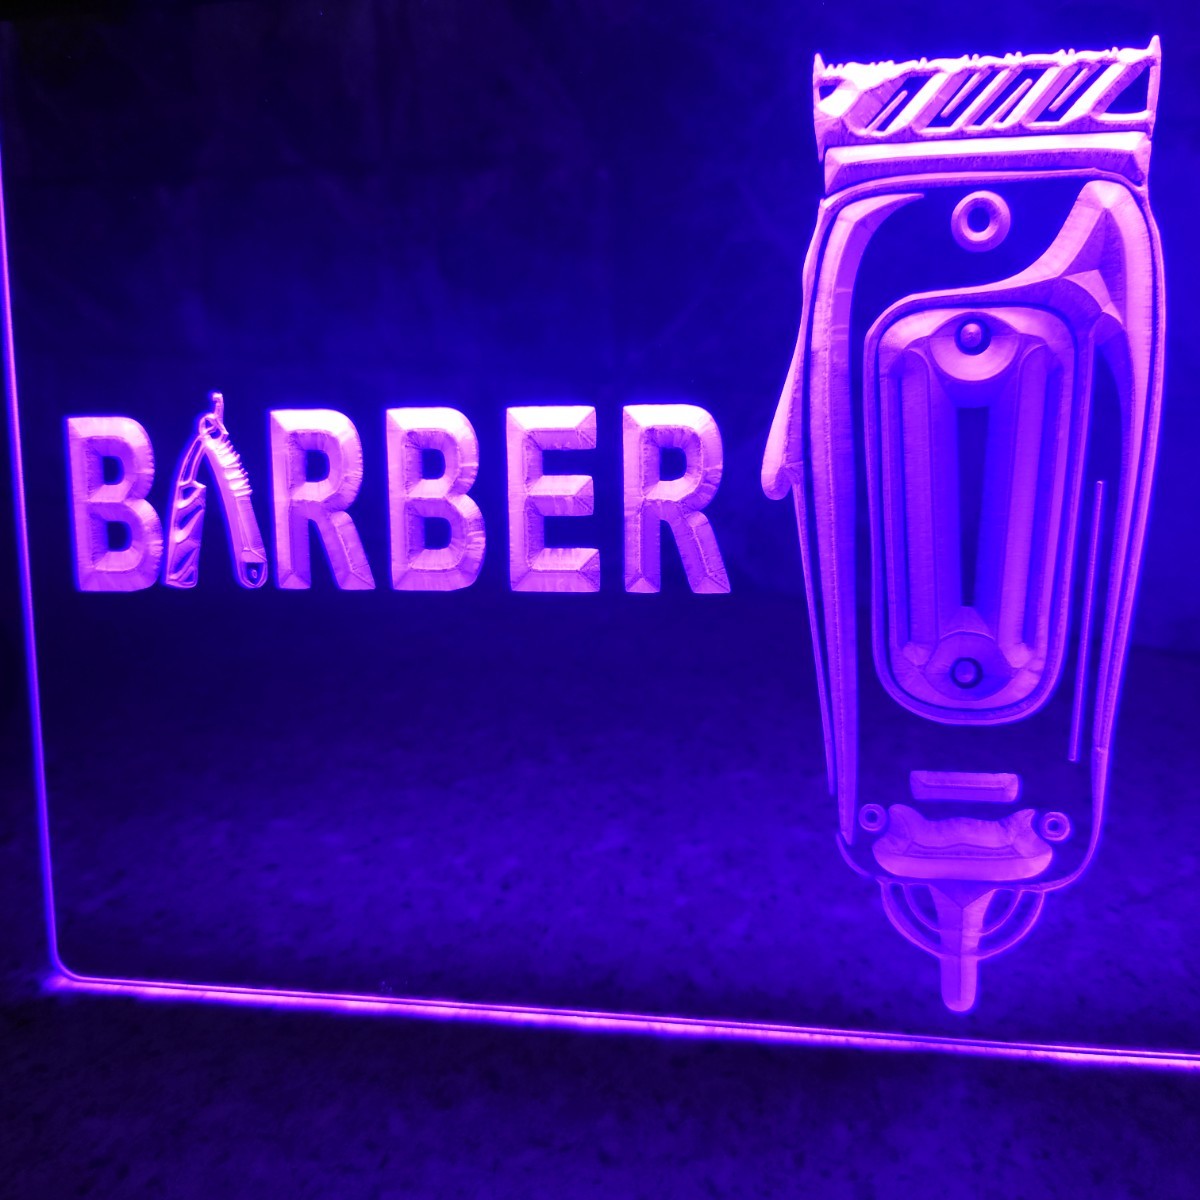 No.NE97V 送料無料 barber LED ネオン 看板 ランプ ライト 照明 インテリア ディスプレイ 雑貨 バーバー 床屋 理容 バーバーショップ WAHL_画像5